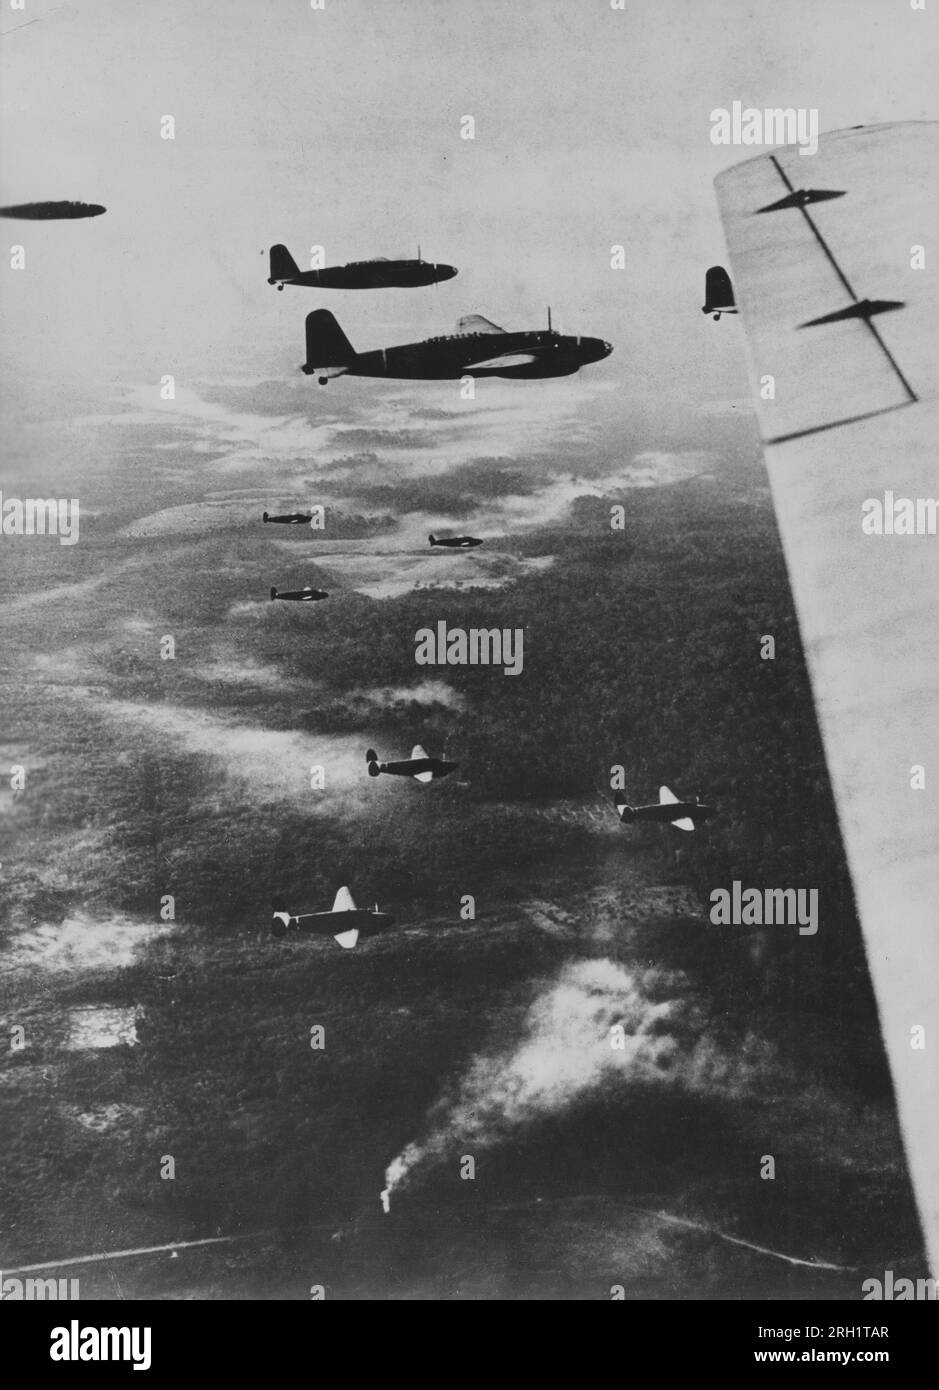 Bataille de Palembang, février 13-15 1942. Les avions de transport de l'armée impériale japonaise transportant des parachutistes du «Teishin Shudan» (groupe de raids) dans le ciel au-dessus de la rivière Musi, Sumatra avancent vers leur destination cible de Palembang, février 1942. Banque D'Images